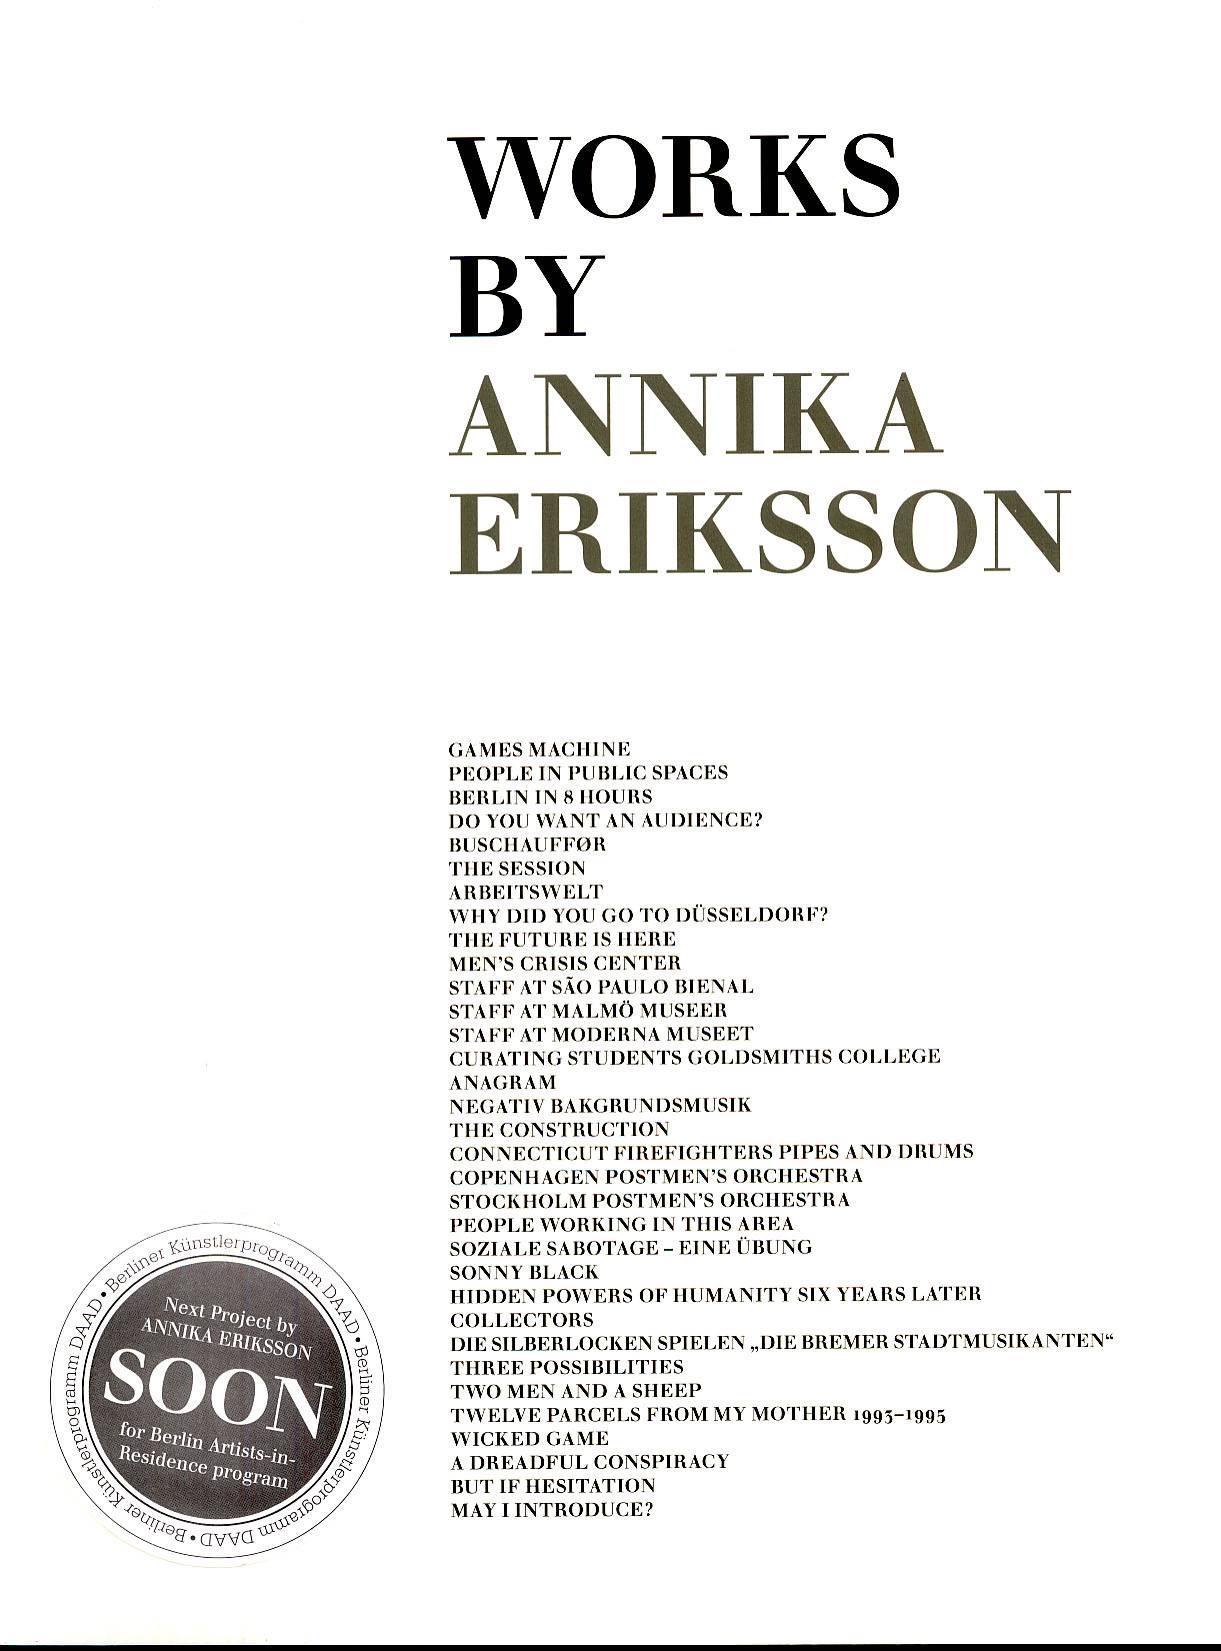 Works by Annika Eriksson